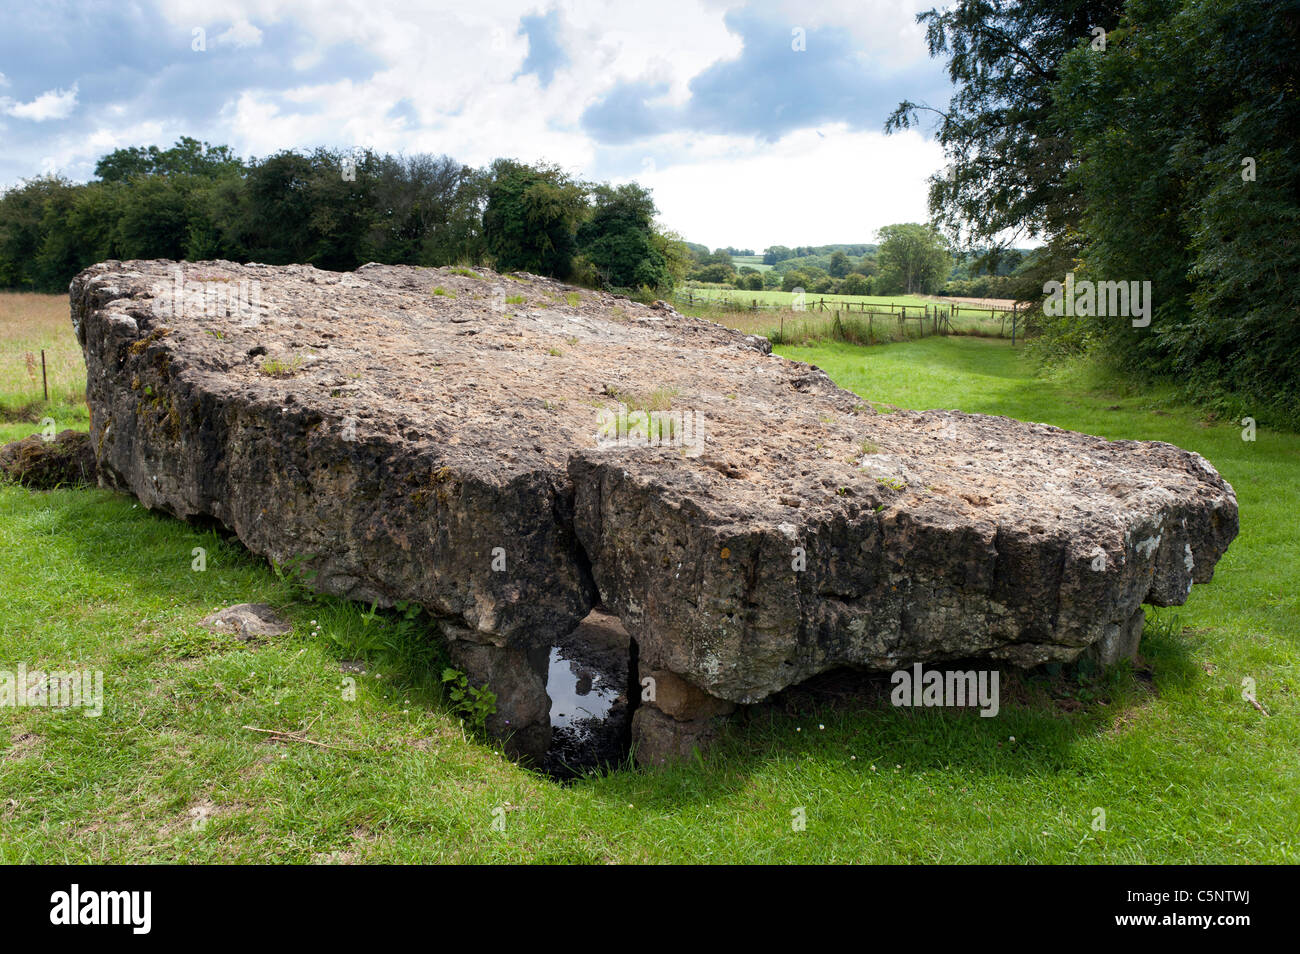 Tinkinswood sépulture néolithique mégalithe néolithique chambre Cowbridge South Wales UK Banque D'Images